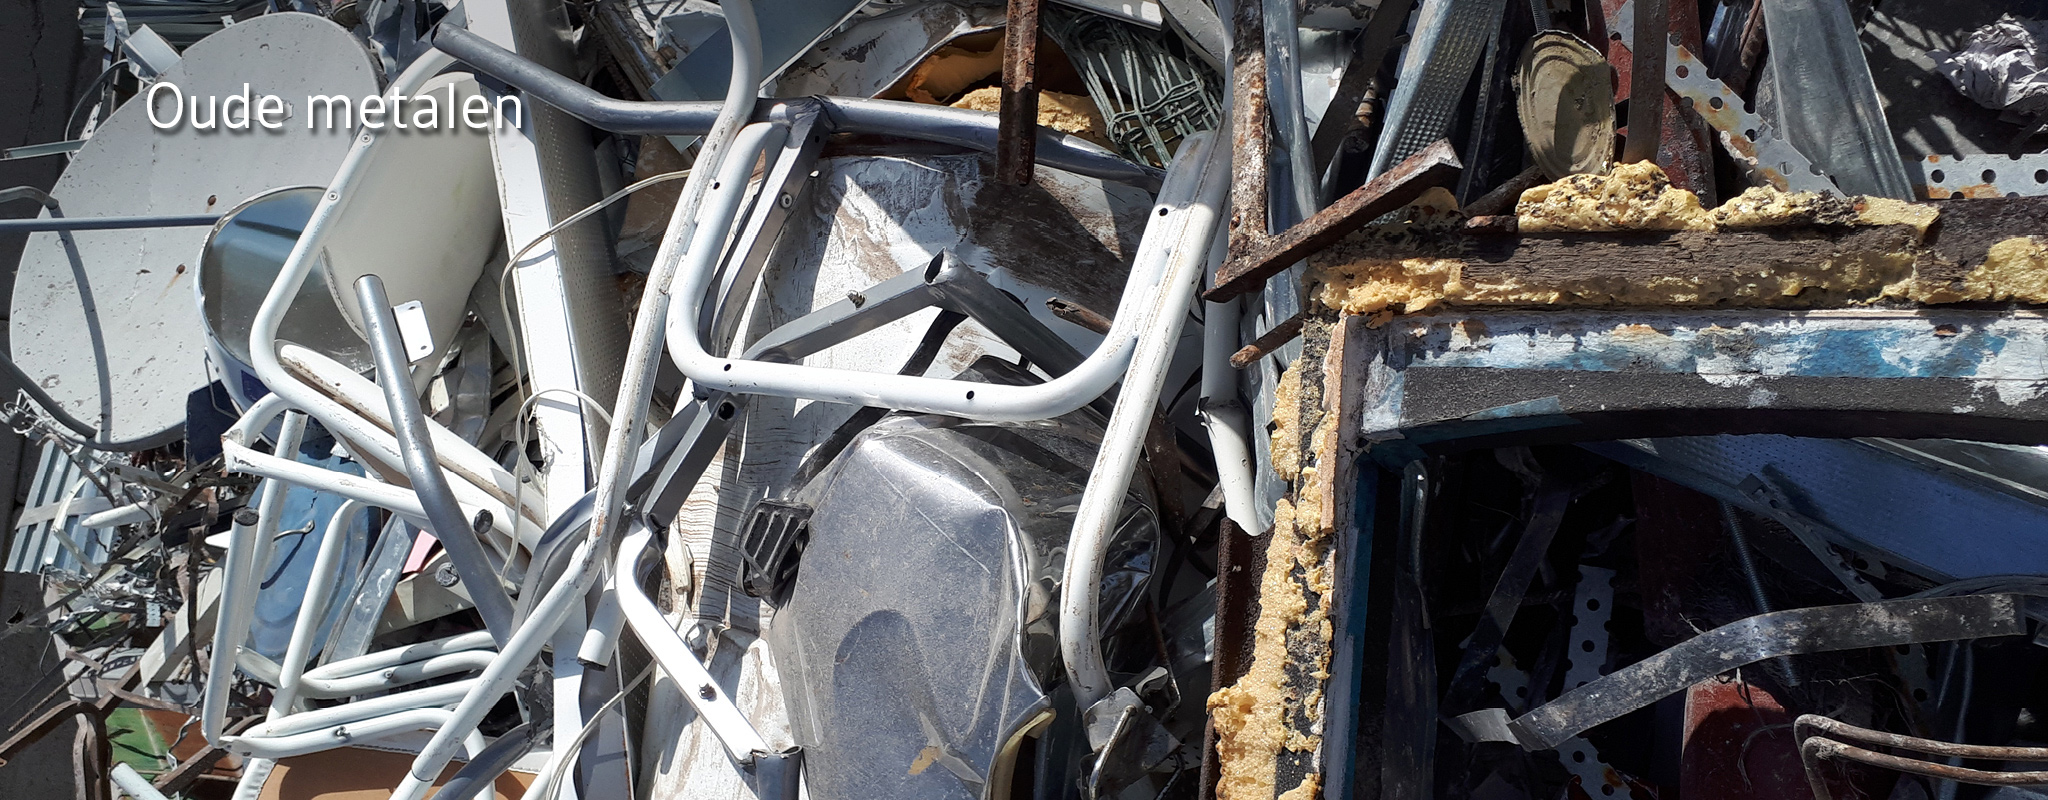 Metalen voorwerpen en buizen in grote afvalcontainer